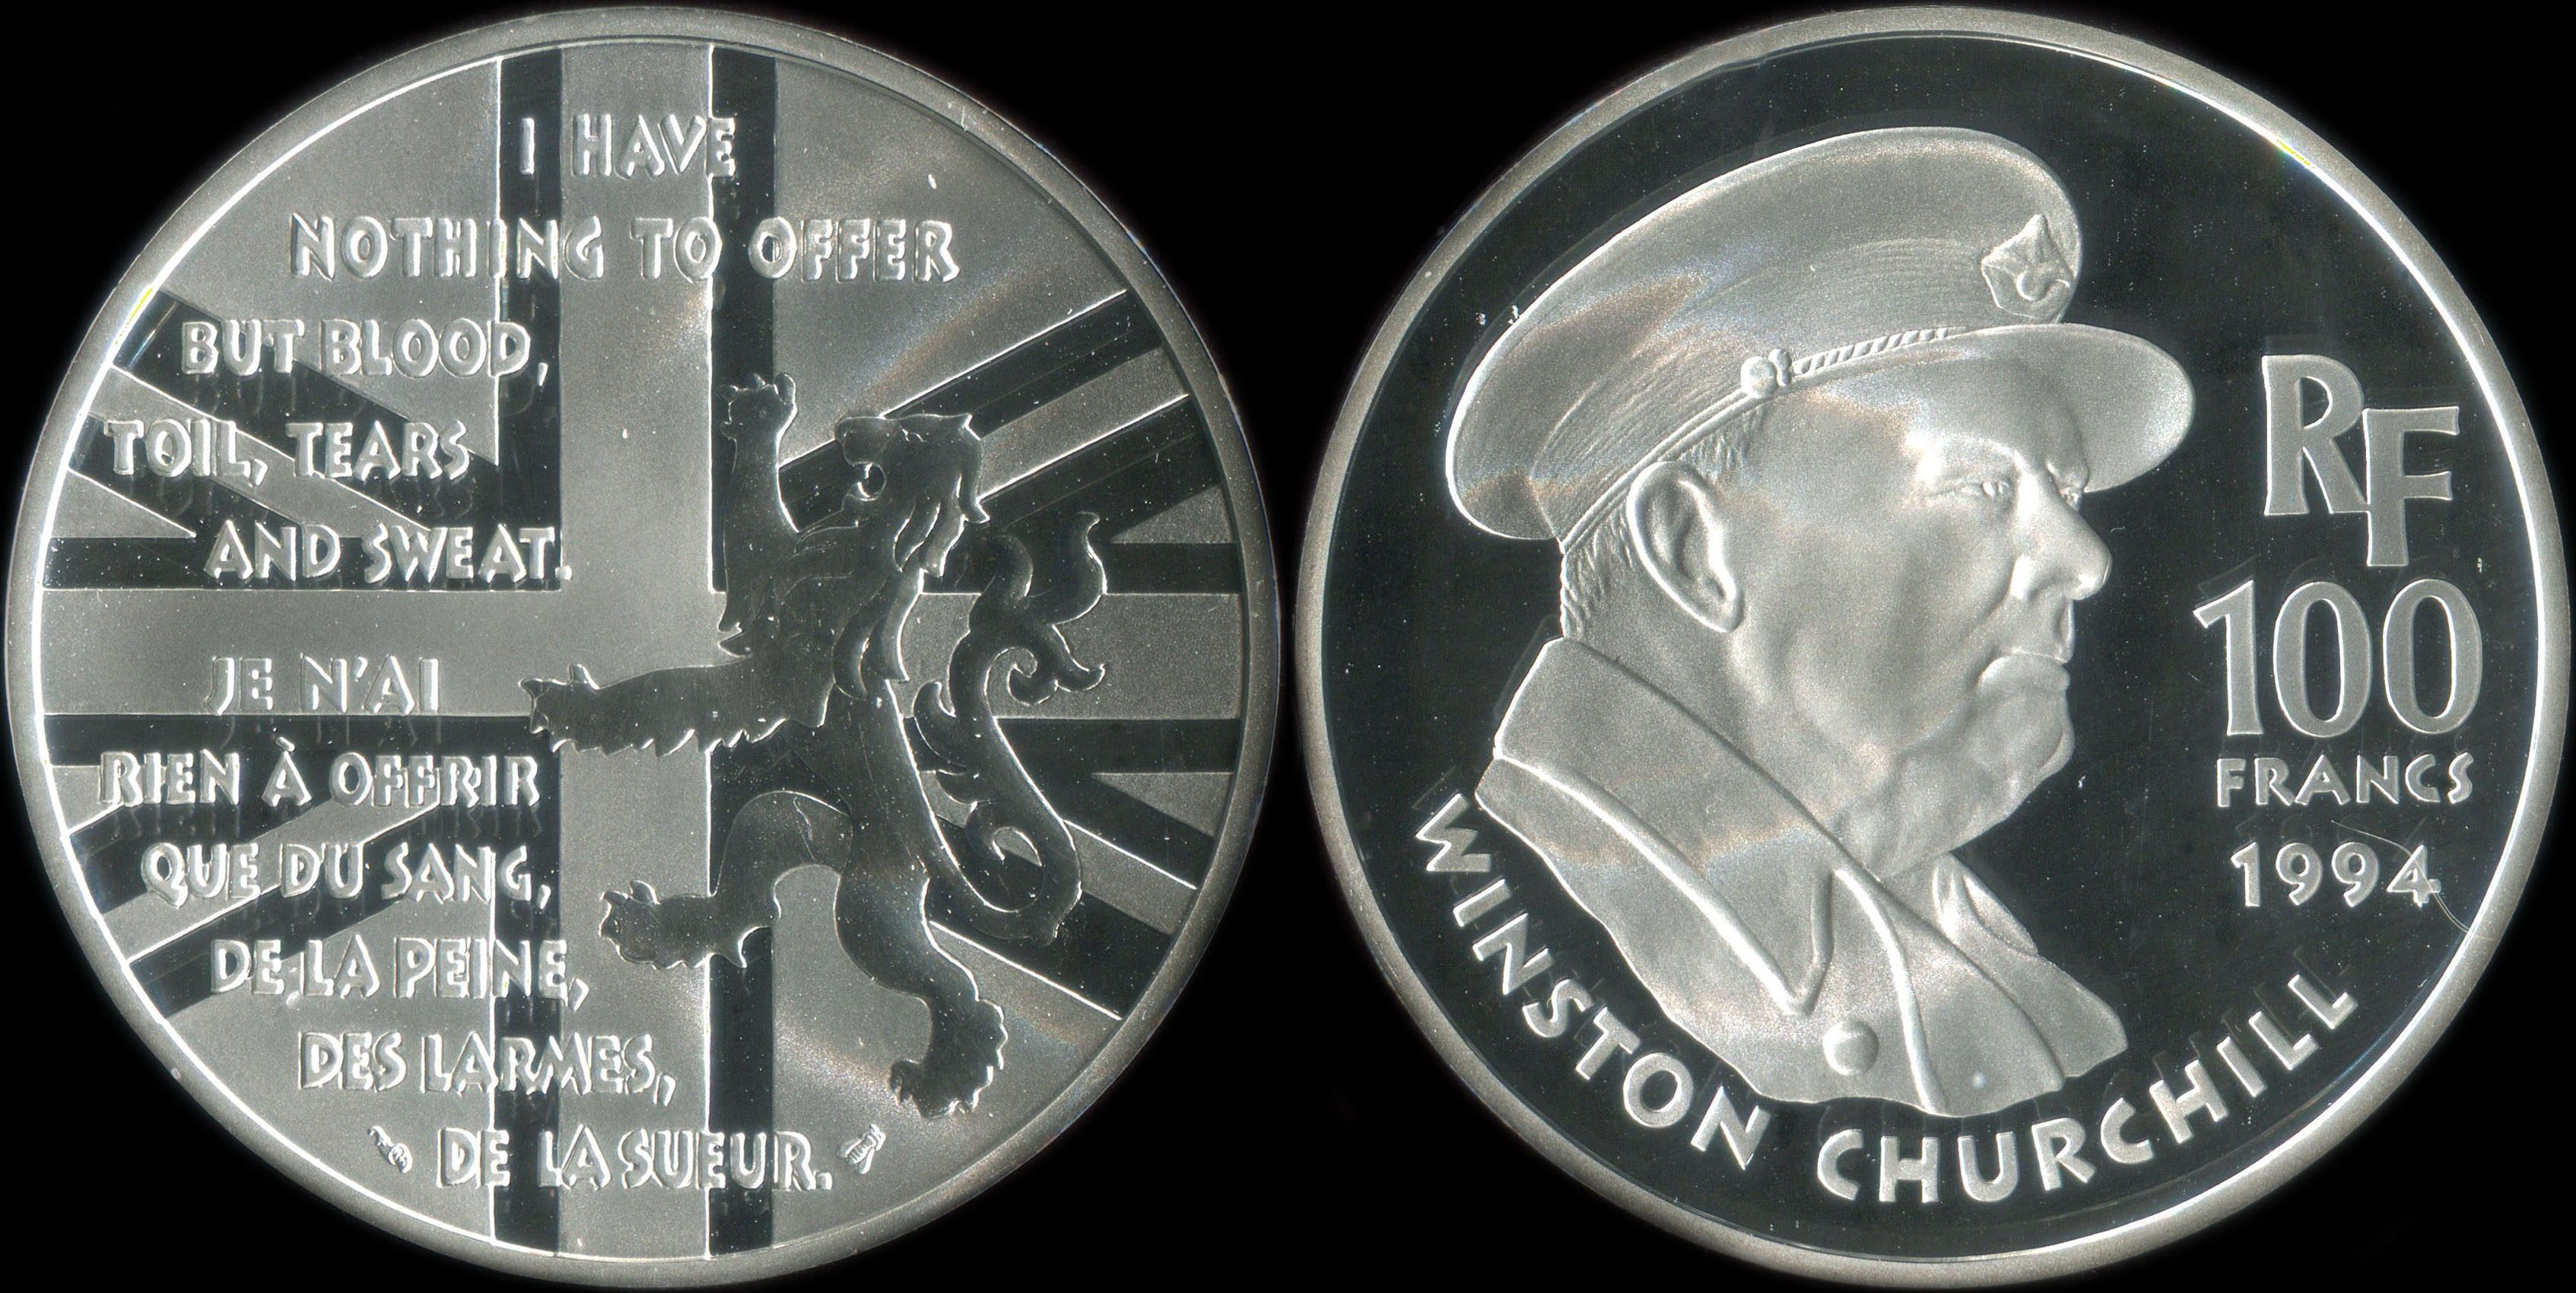 Pièce de 100 francs 1994 - La Liberté retrouvée - Winston Churchill